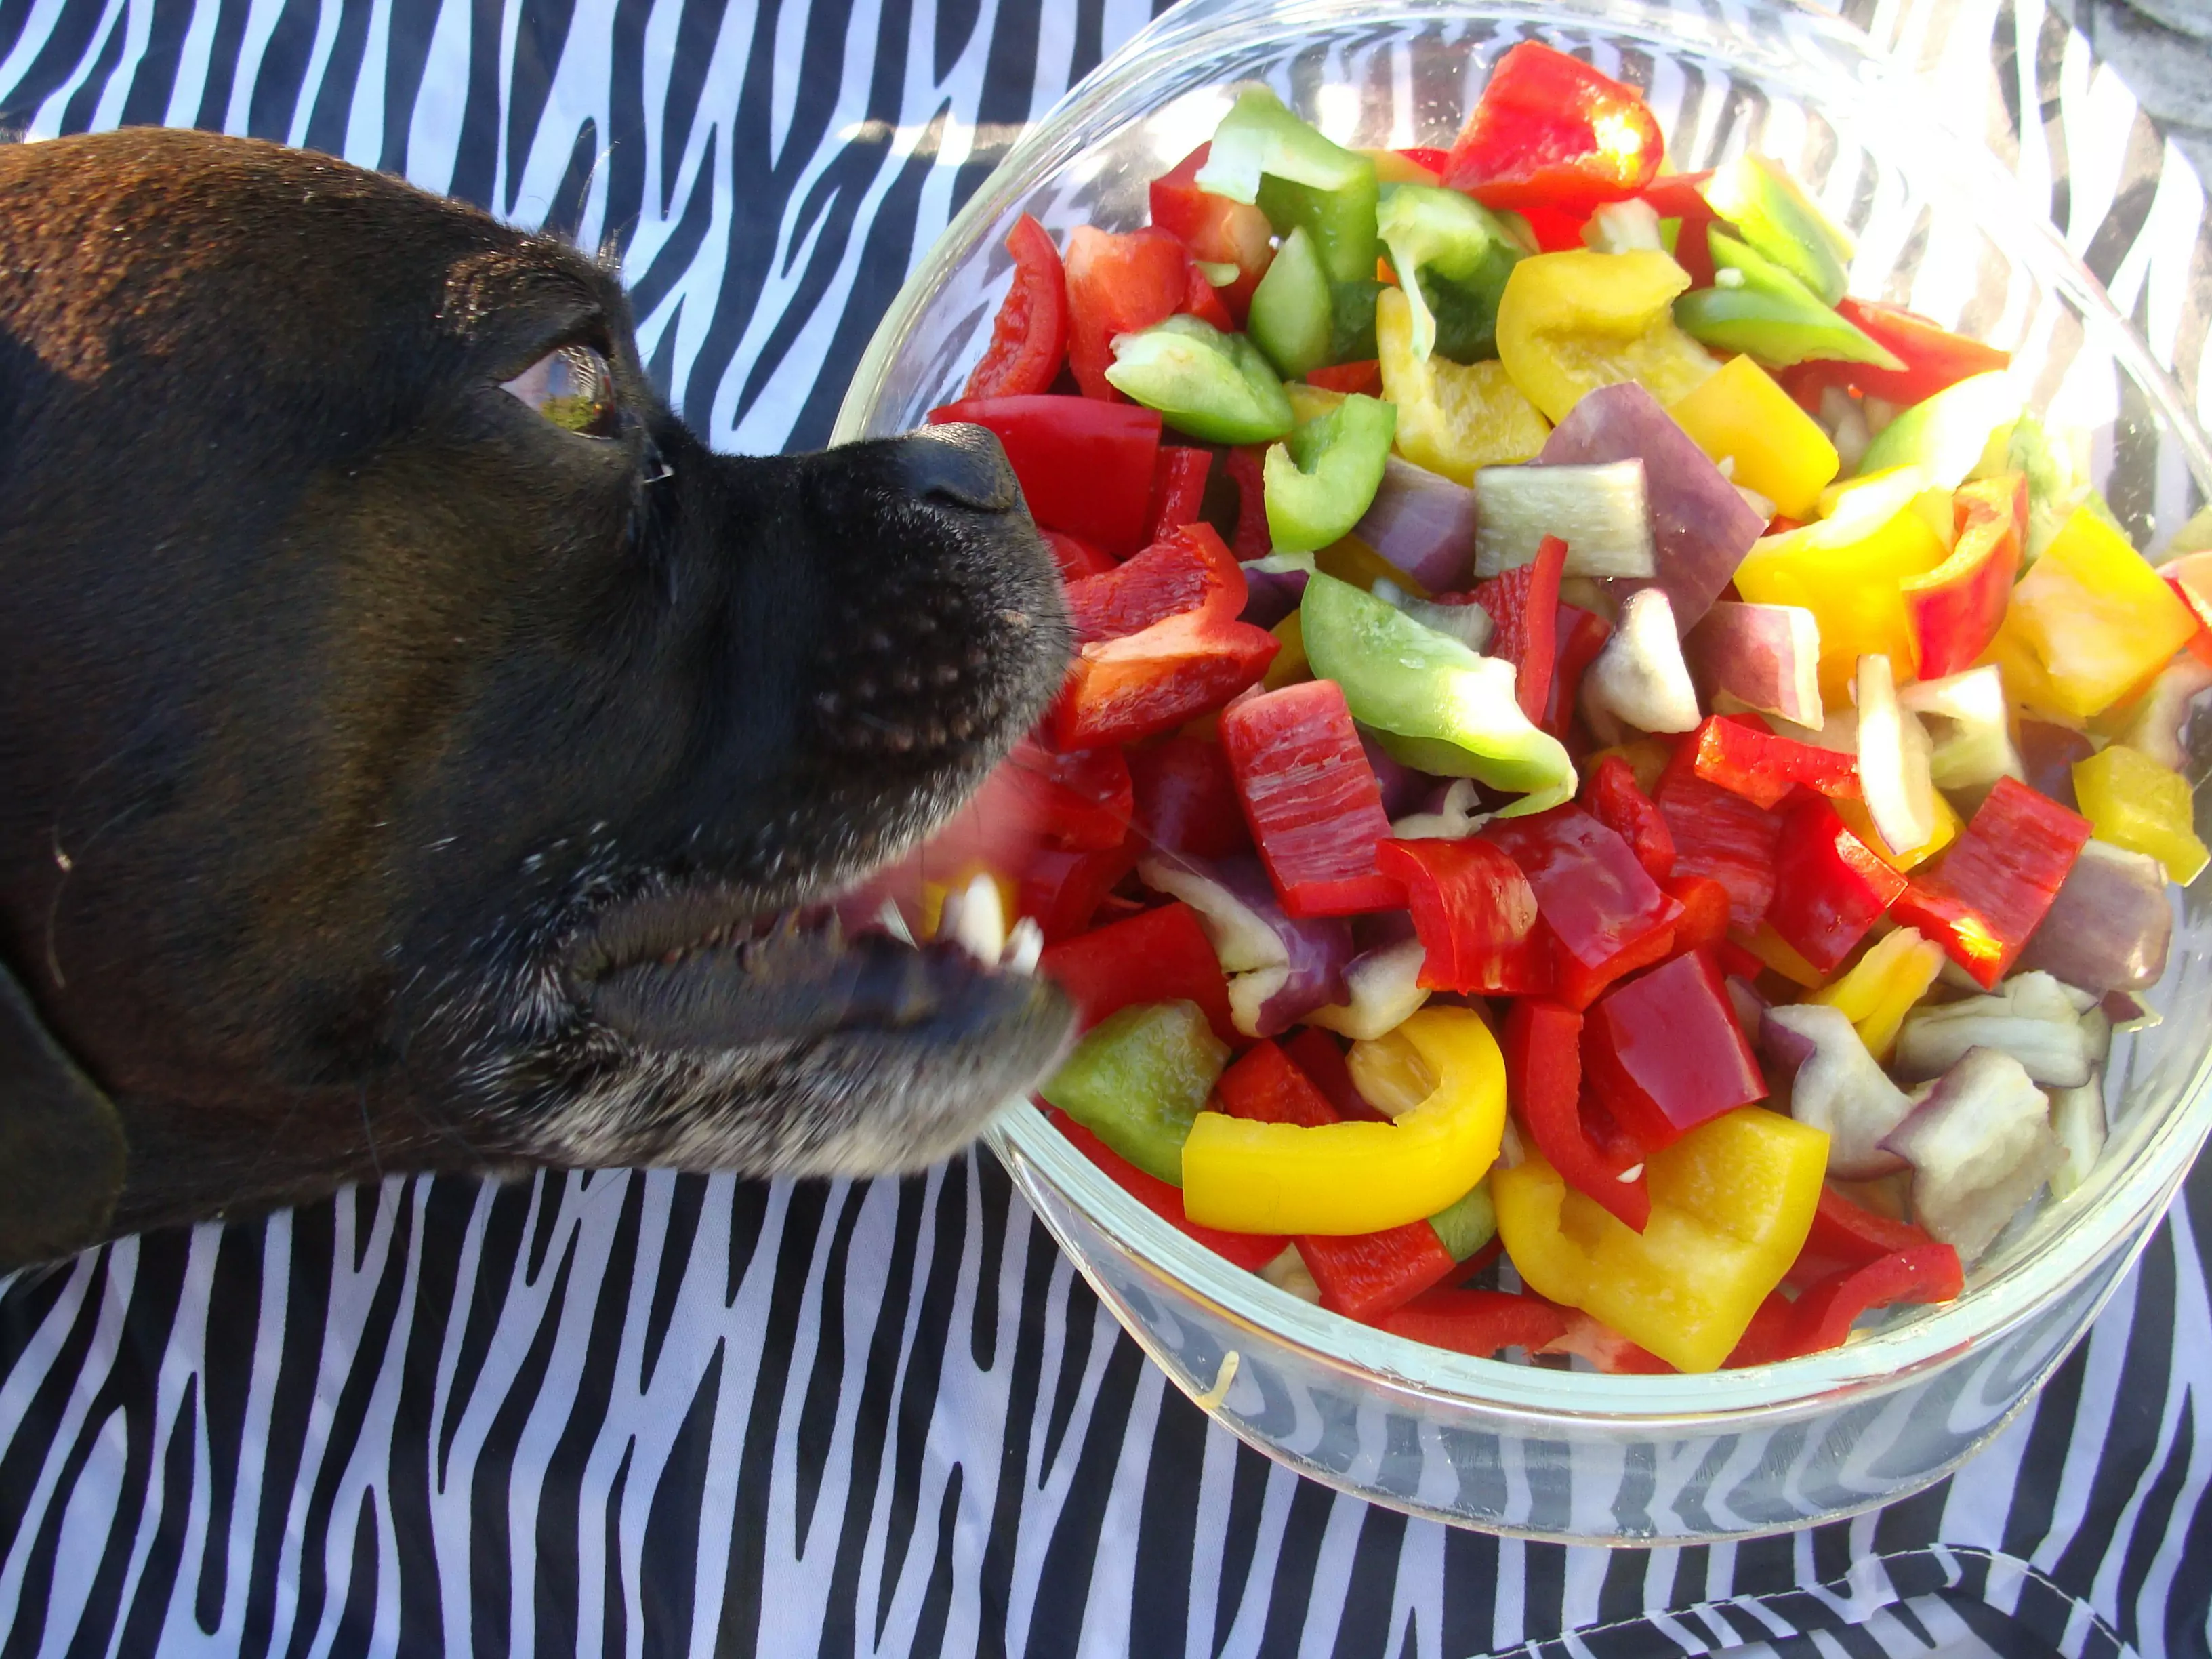 Os cães podem comer pimentas? Os cães comem malaguetas como fazer